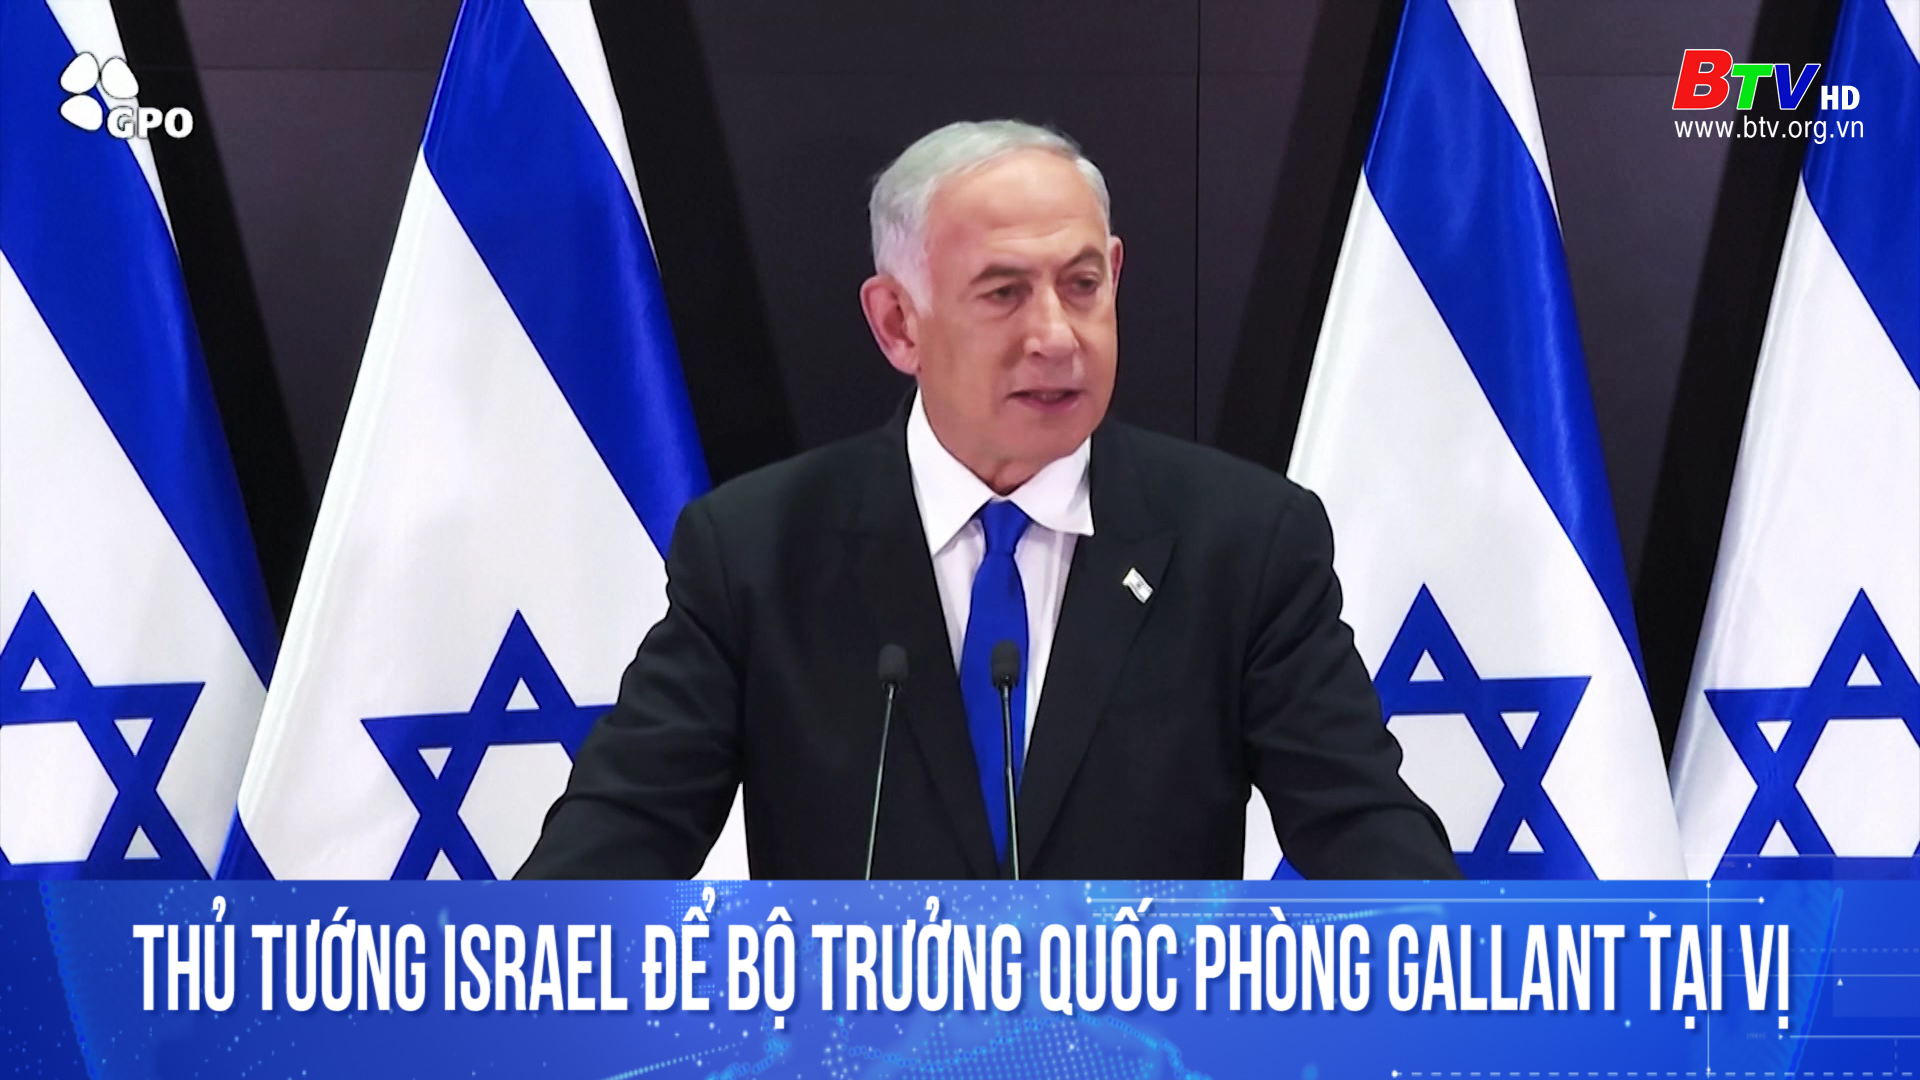 Thủ tướng Israel để Bộ trưởng Quốc phòng Gallant tại vị